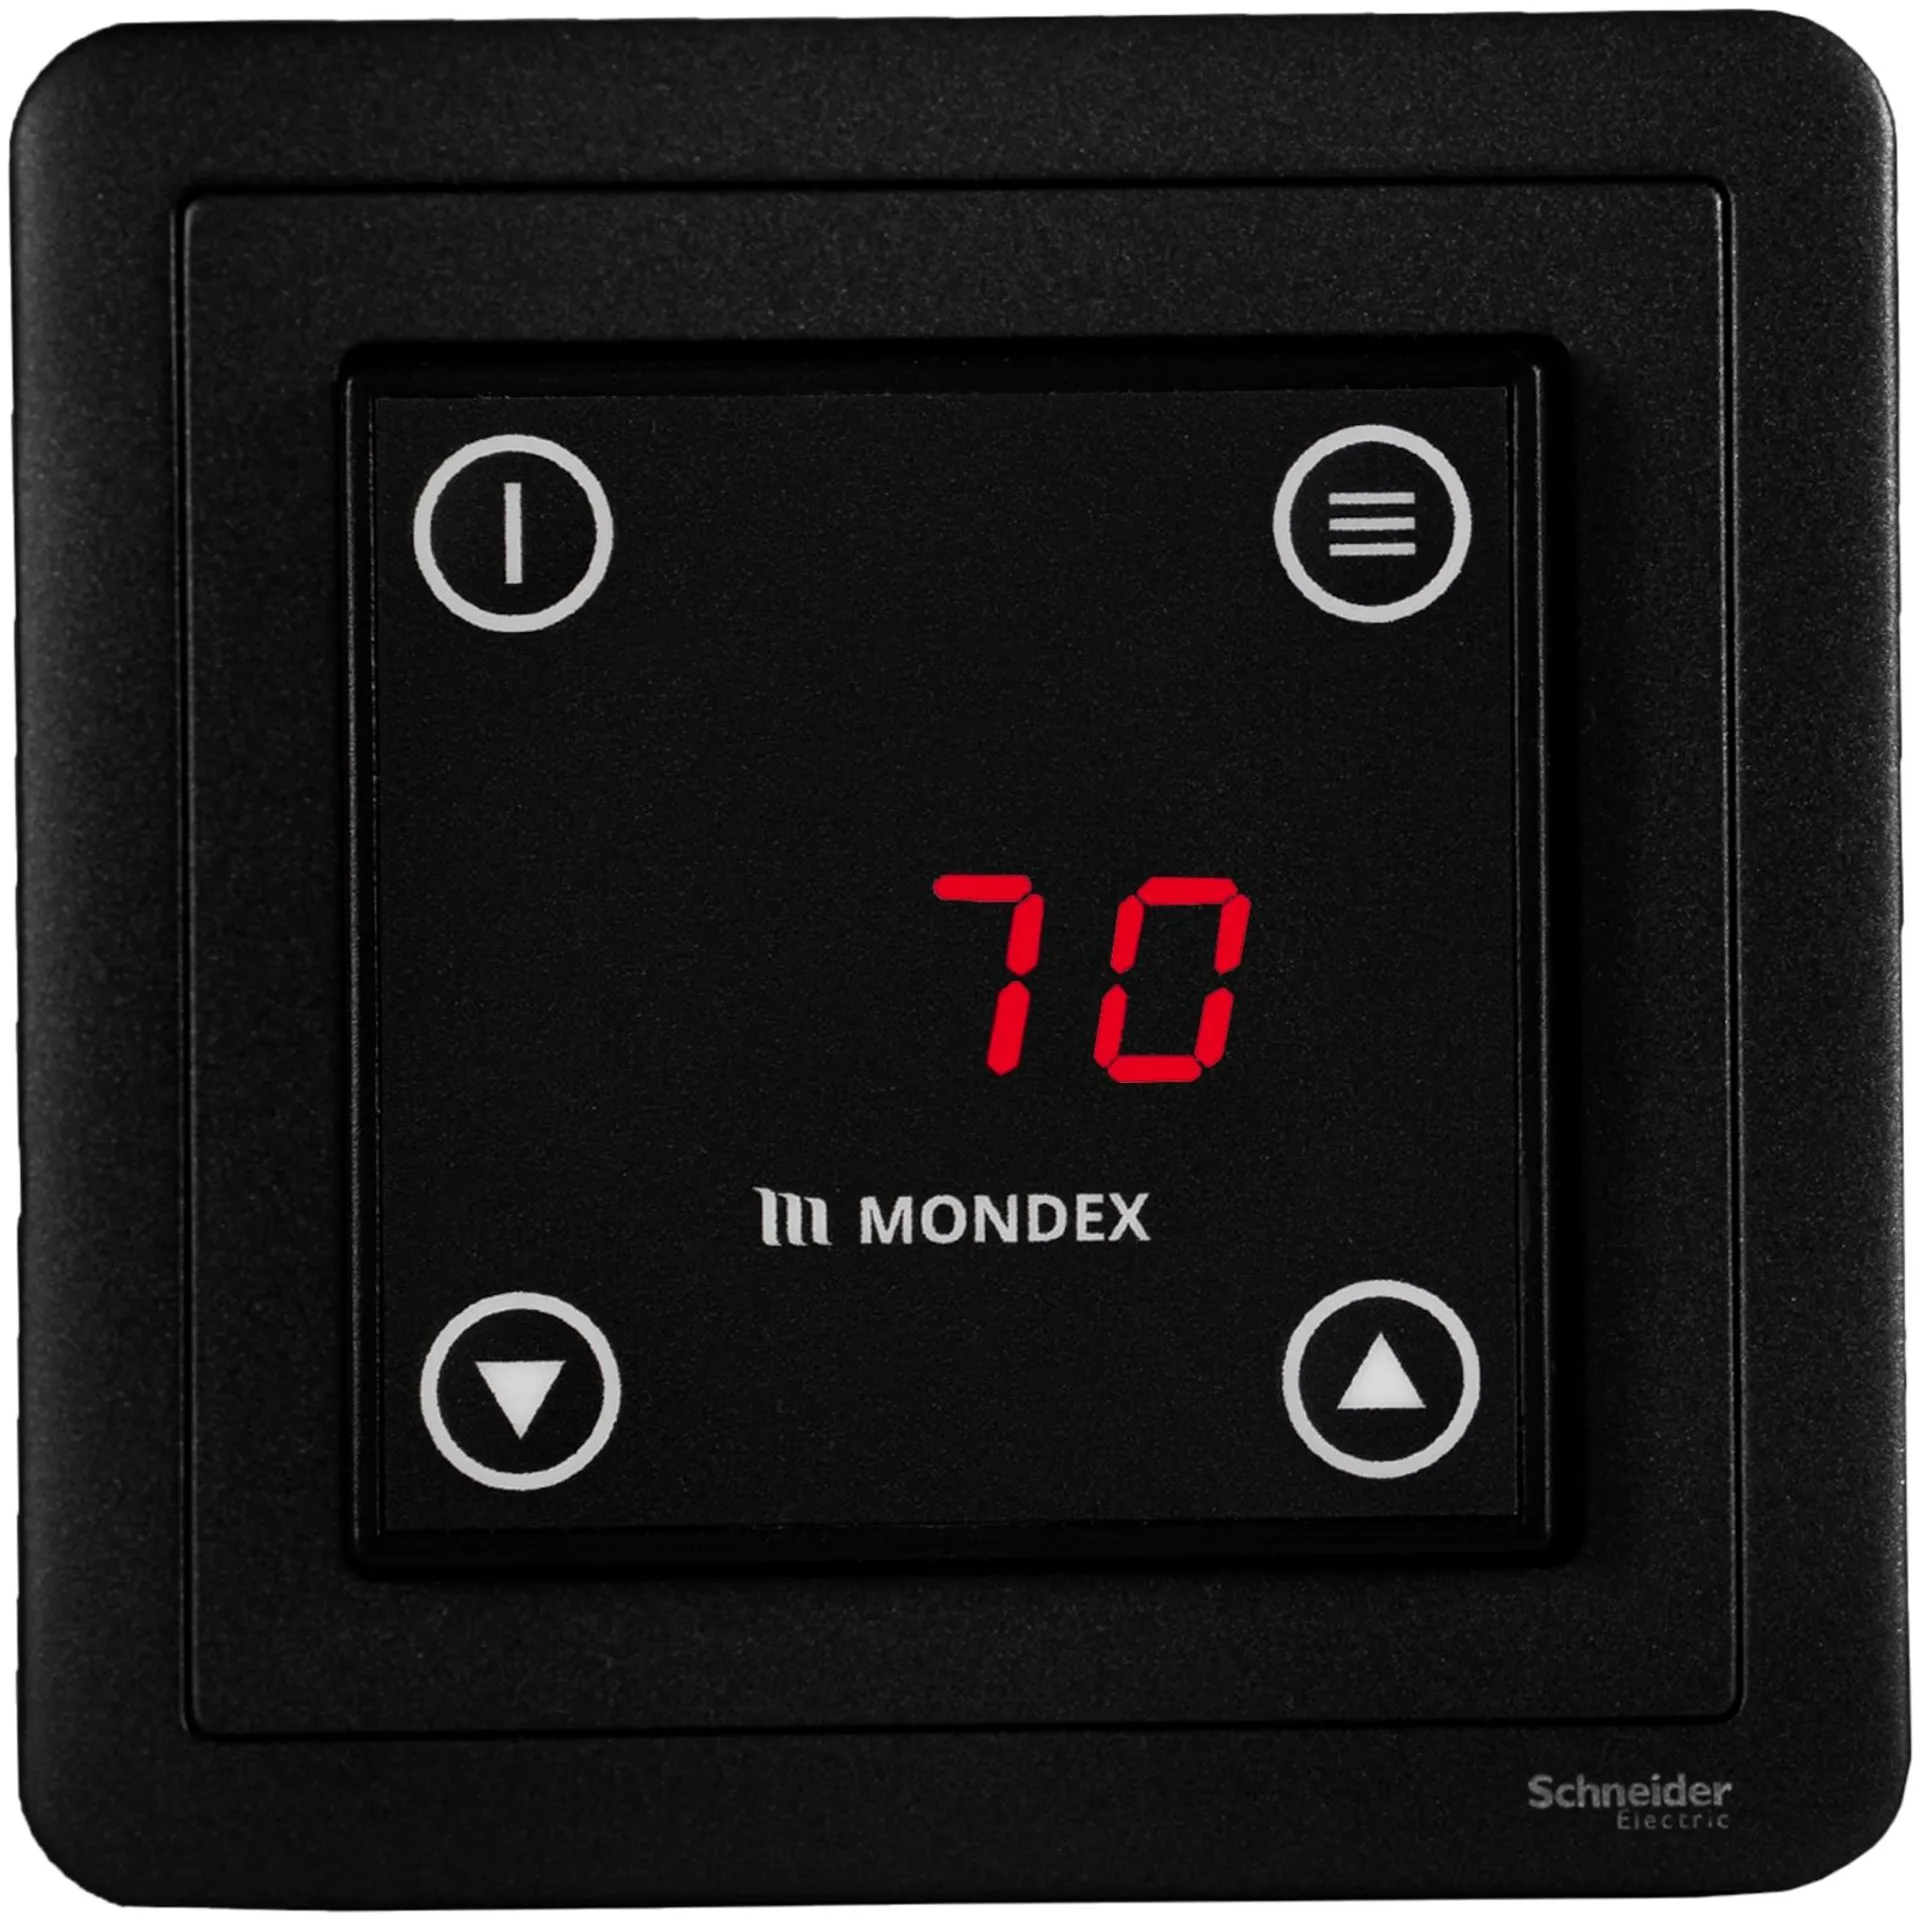 Sähkökiuas Mondex Tahko E2 9.0 KW rst - 2